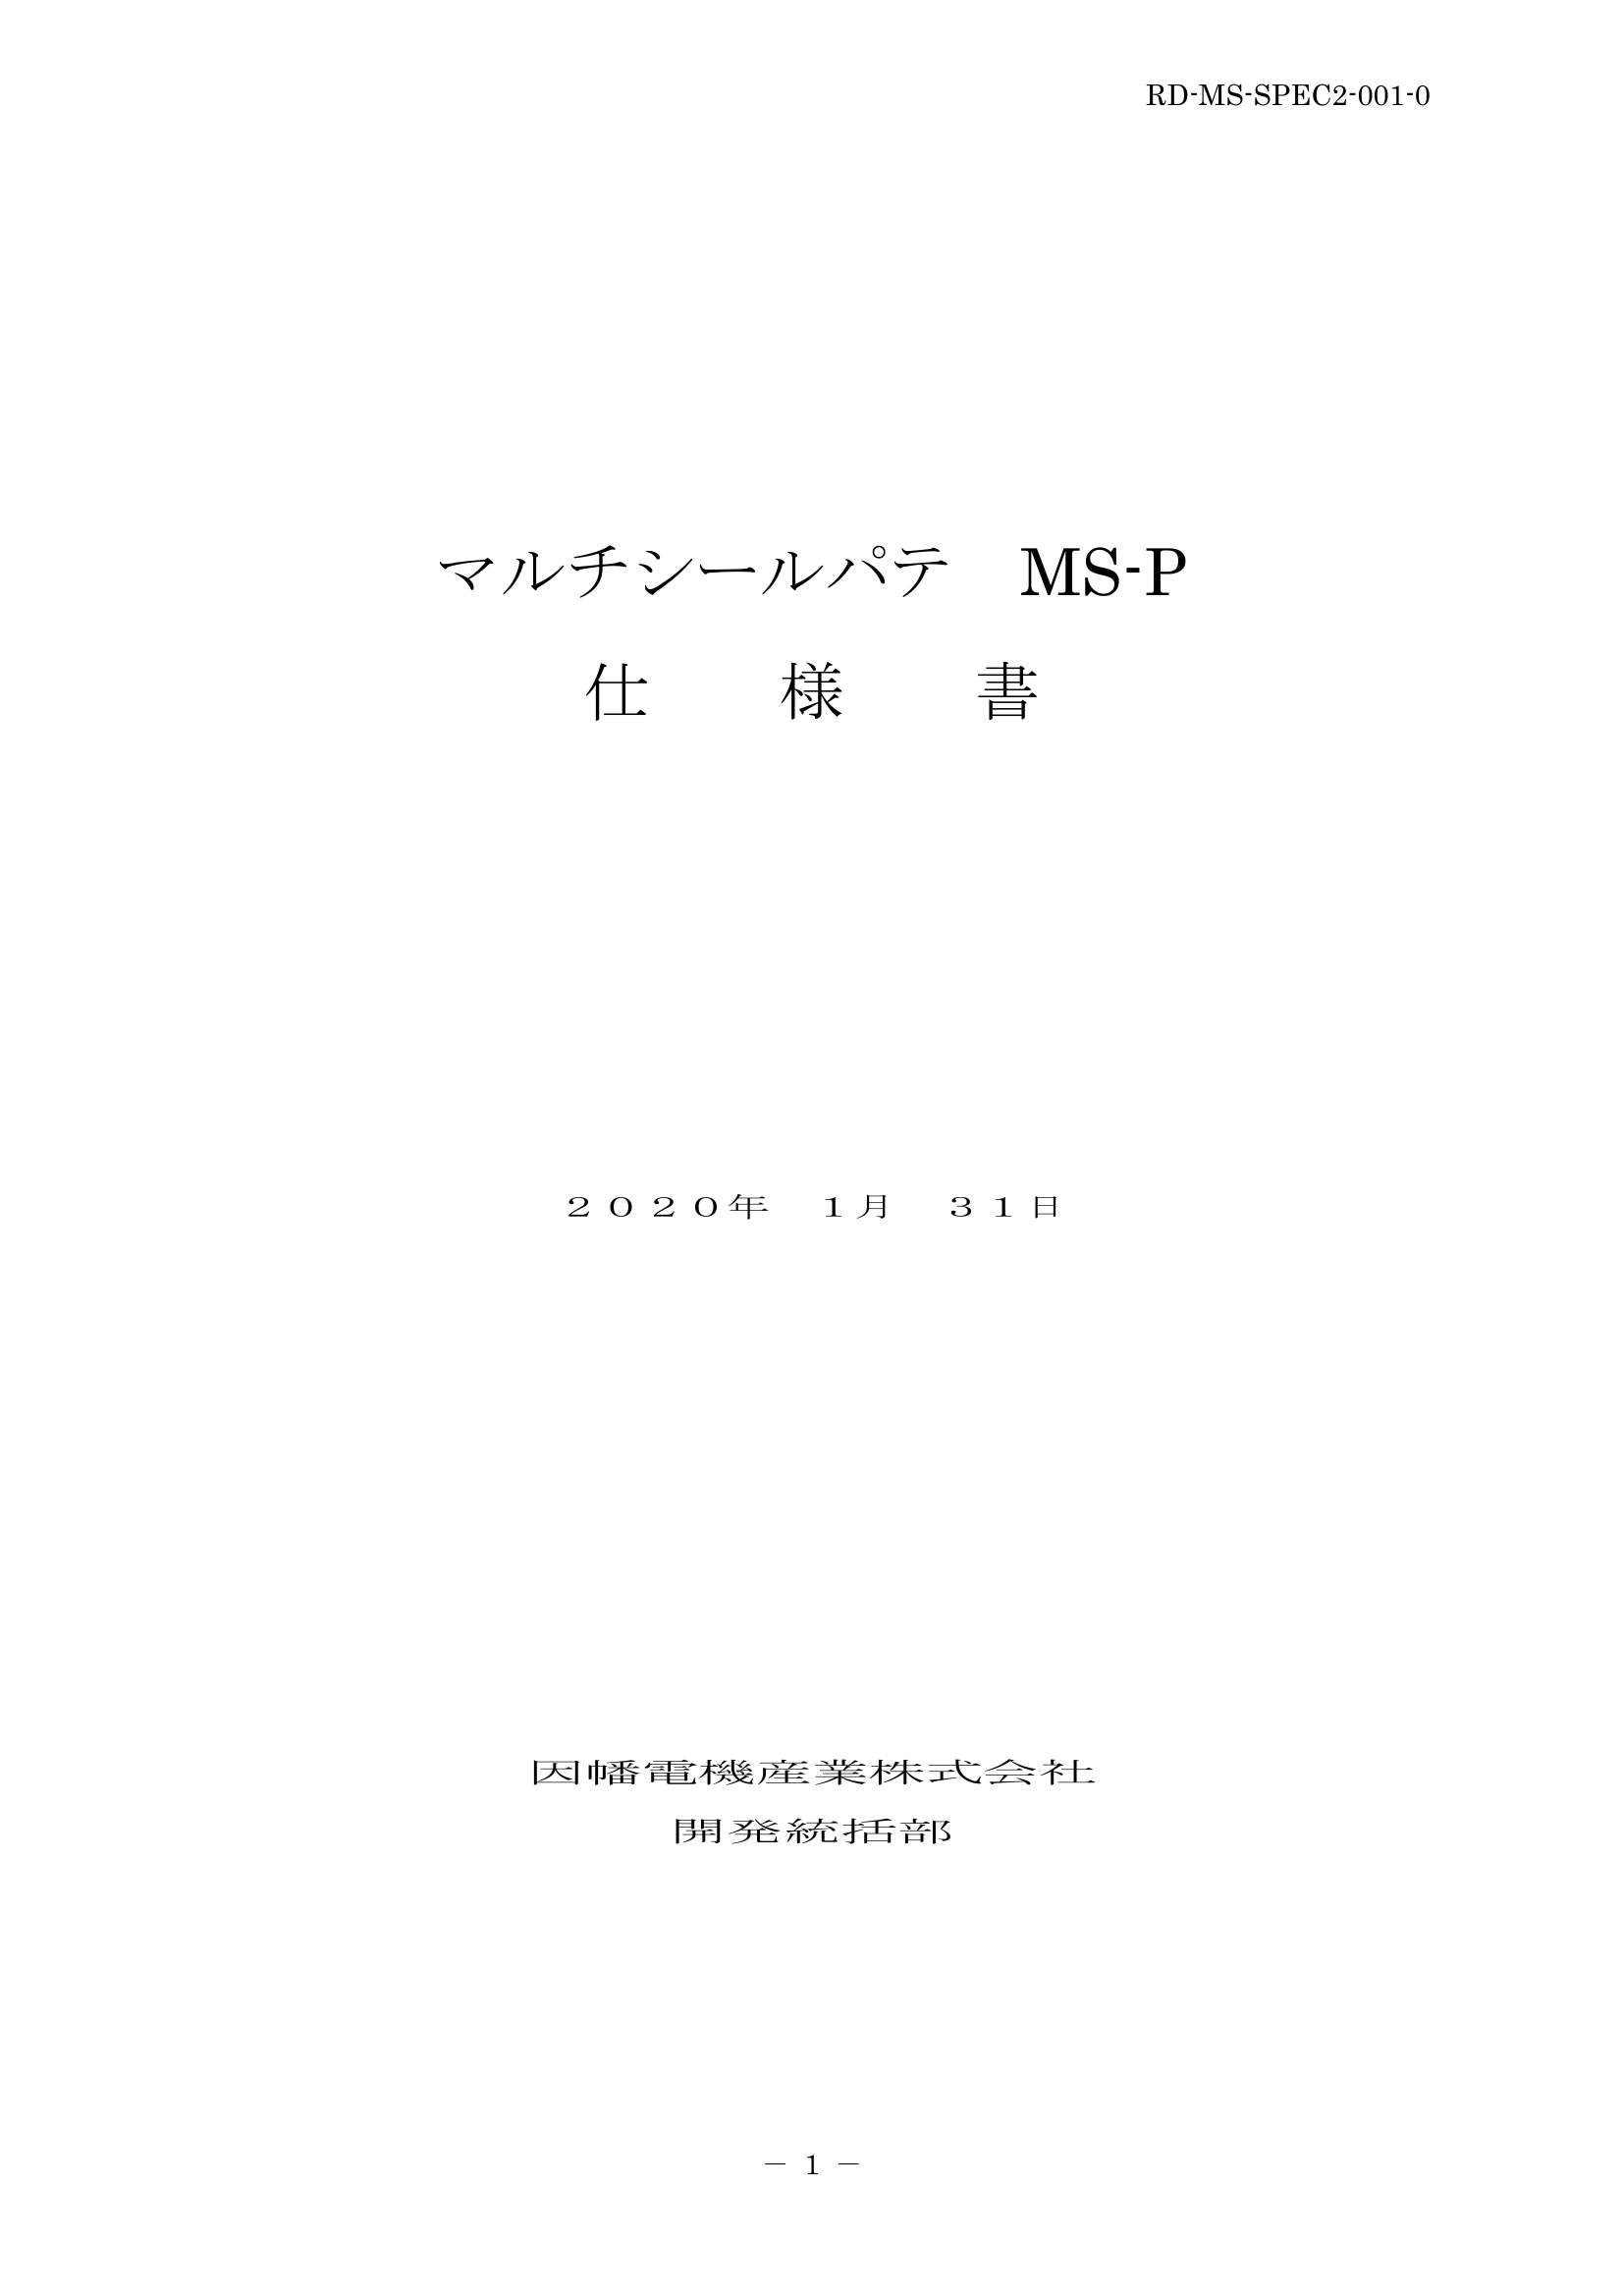 MS-P_仕様書_20200131.pdf